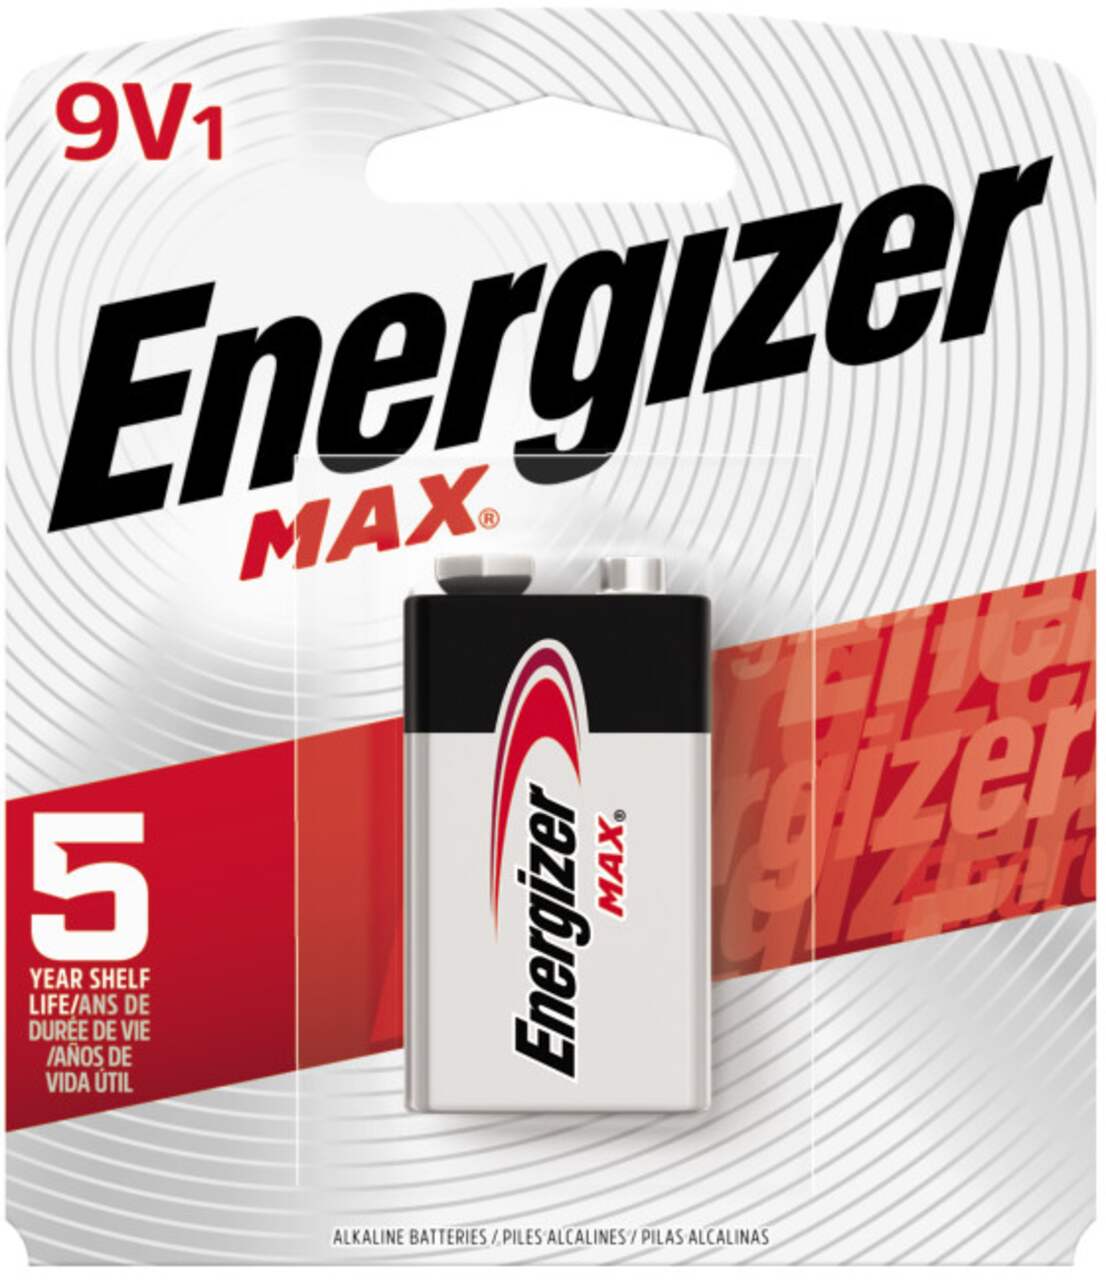 Piles, emballage régulier, max d-2 – Energizer : Pile et batterie standard